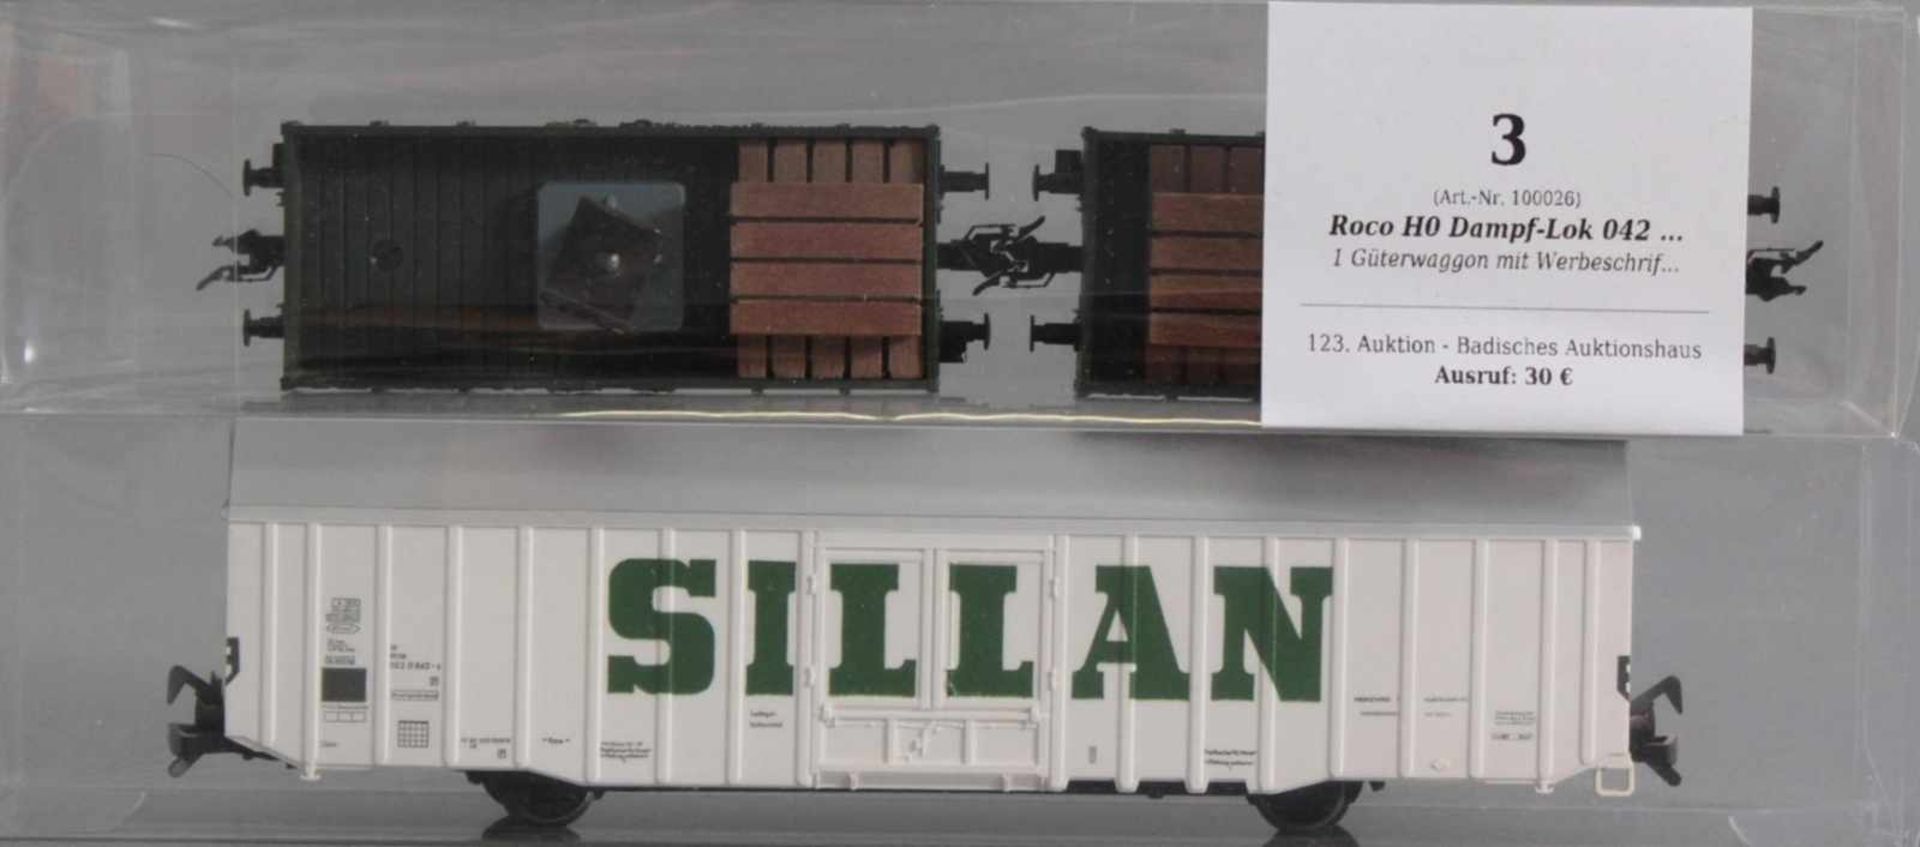 Roco H0 Dampf-Lok 042 052-1 mit 6 Fleischmann Waggons1 Güterwaggon mit Werbeschrift Silan, 2 - Bild 4 aus 4